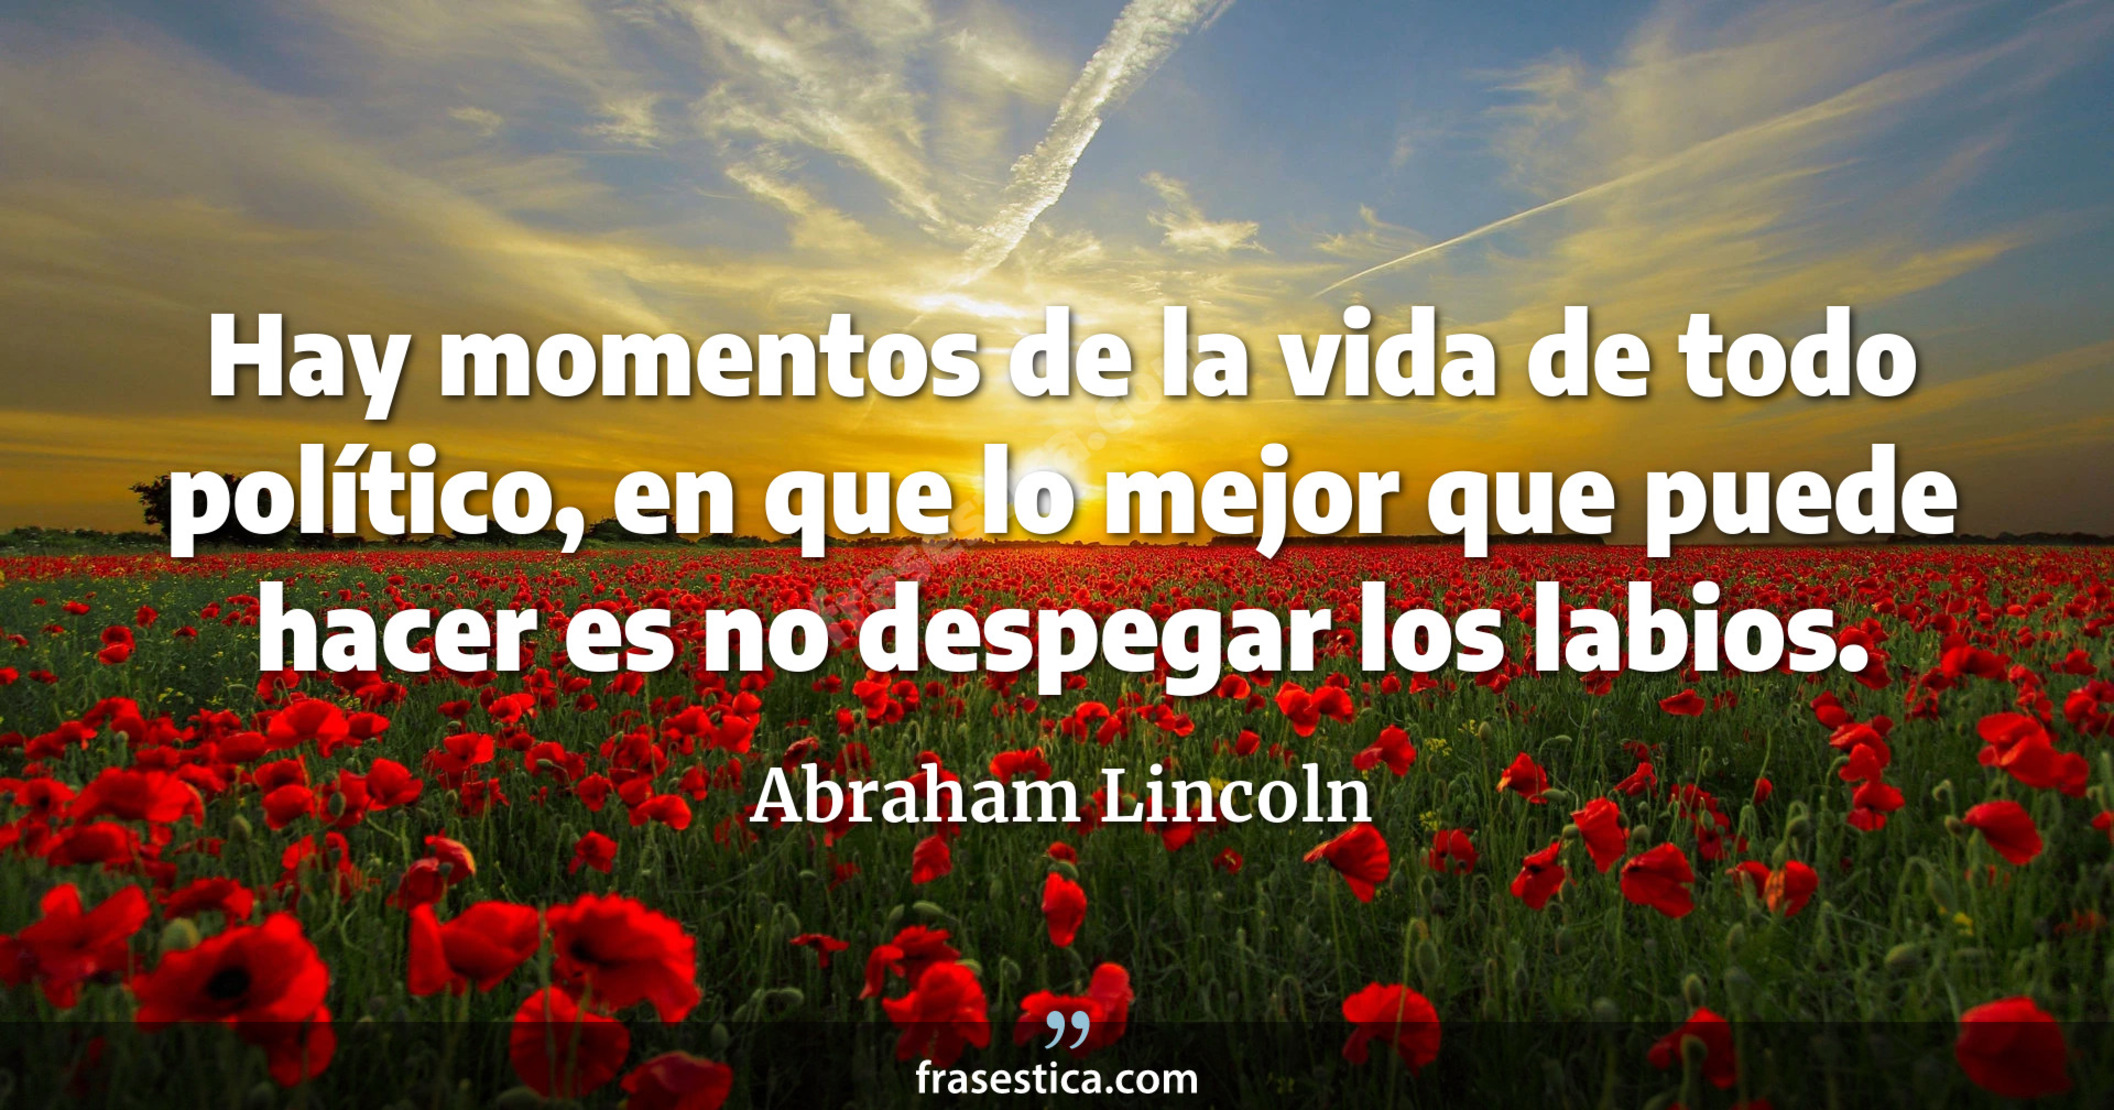 Hay momentos de la vida de todo político, en que lo mejor que puede hacer es no despegar los labios. - Abraham Lincoln